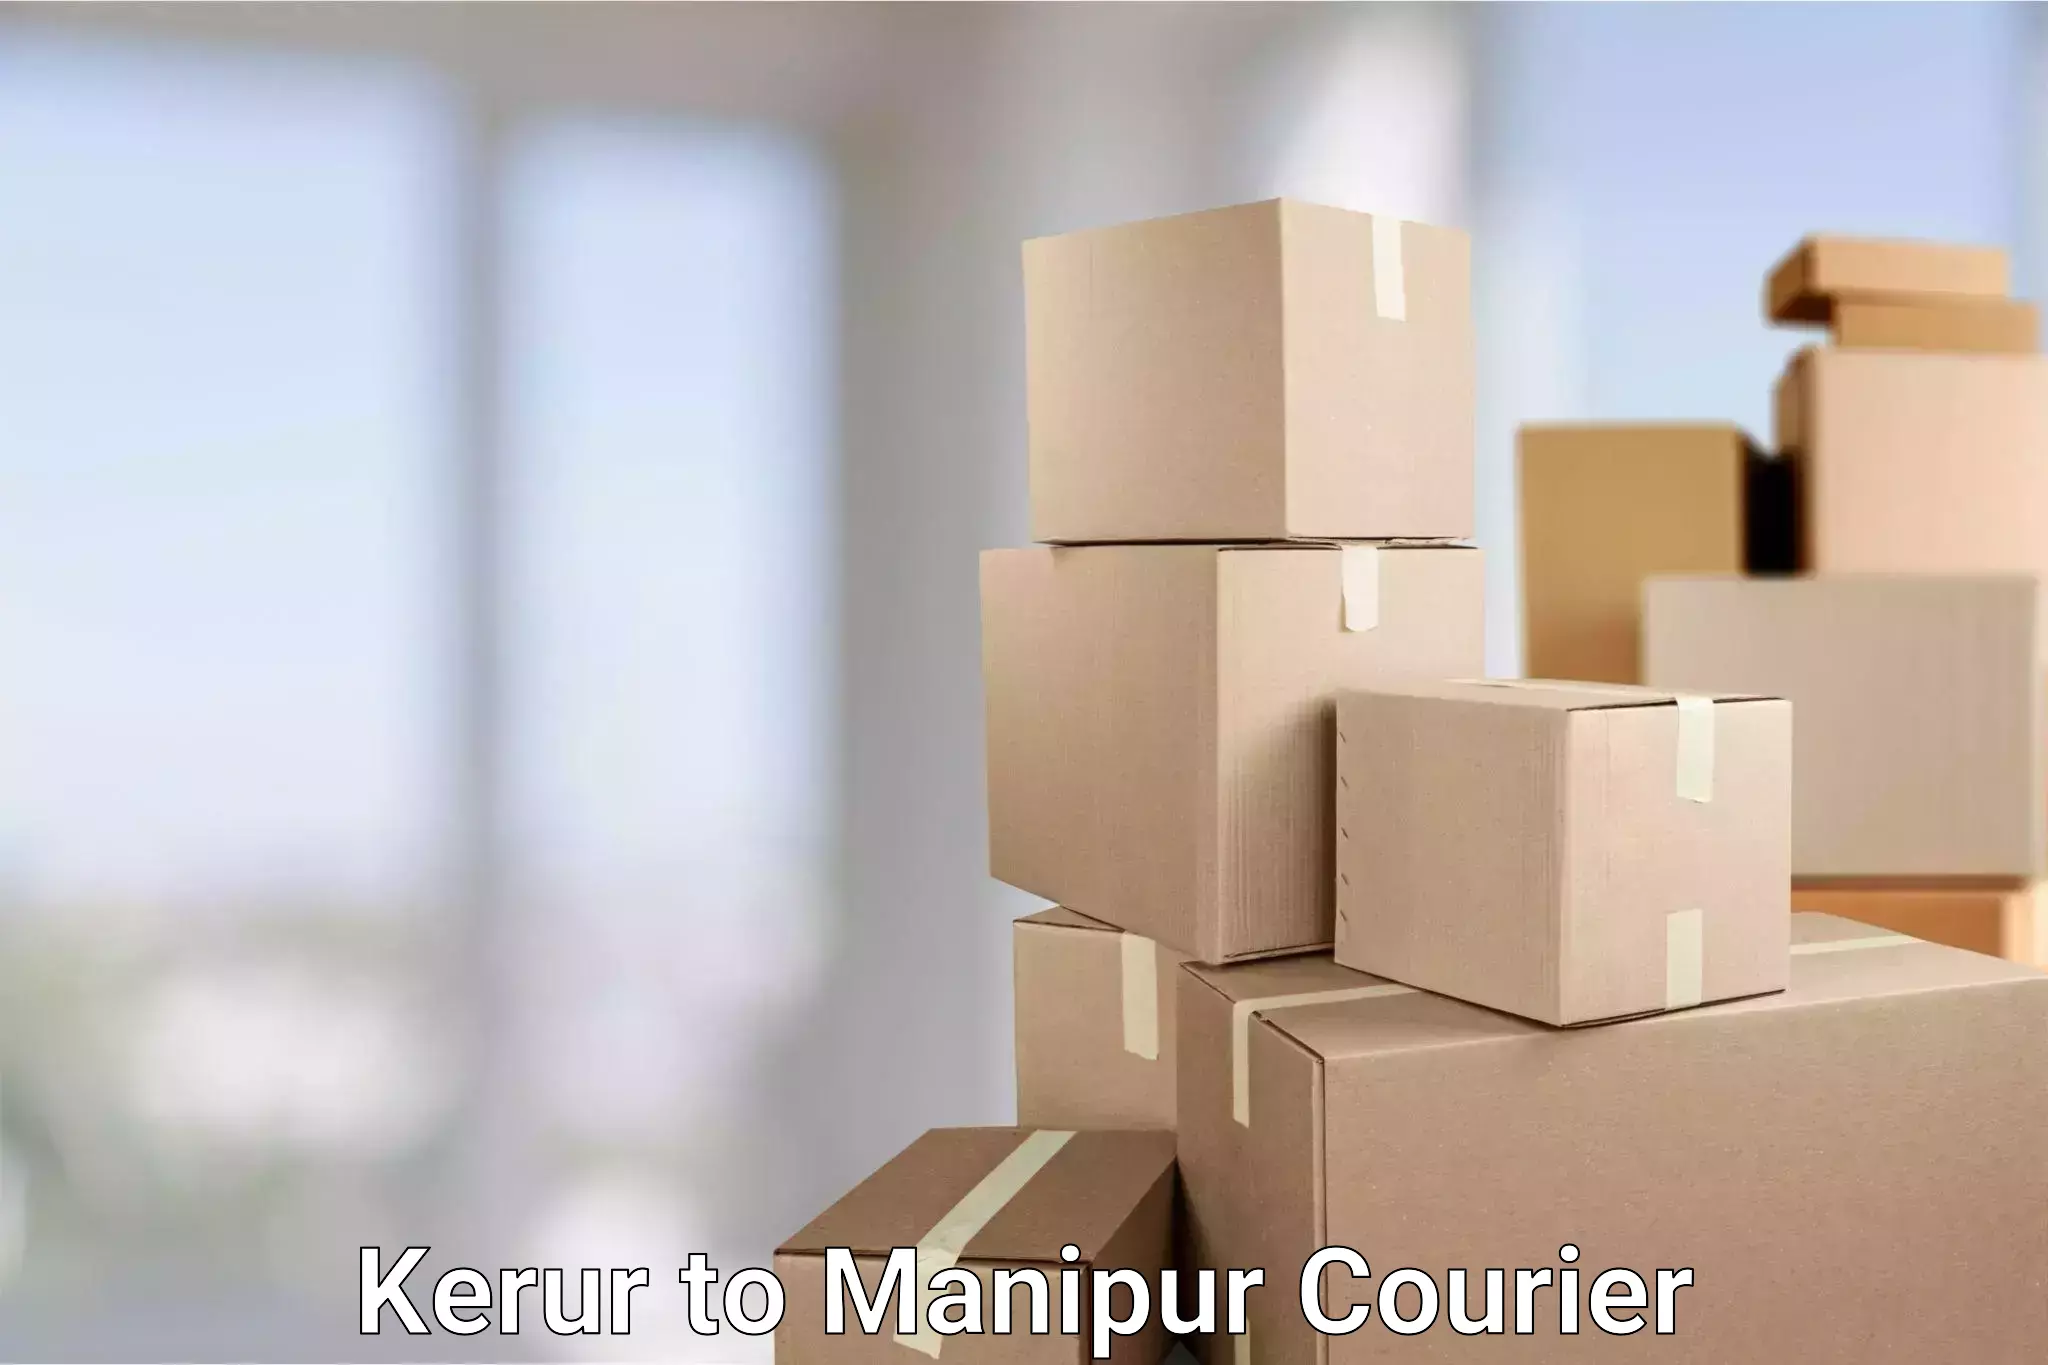 Efficient parcel tracking Kerur to Ukhrul